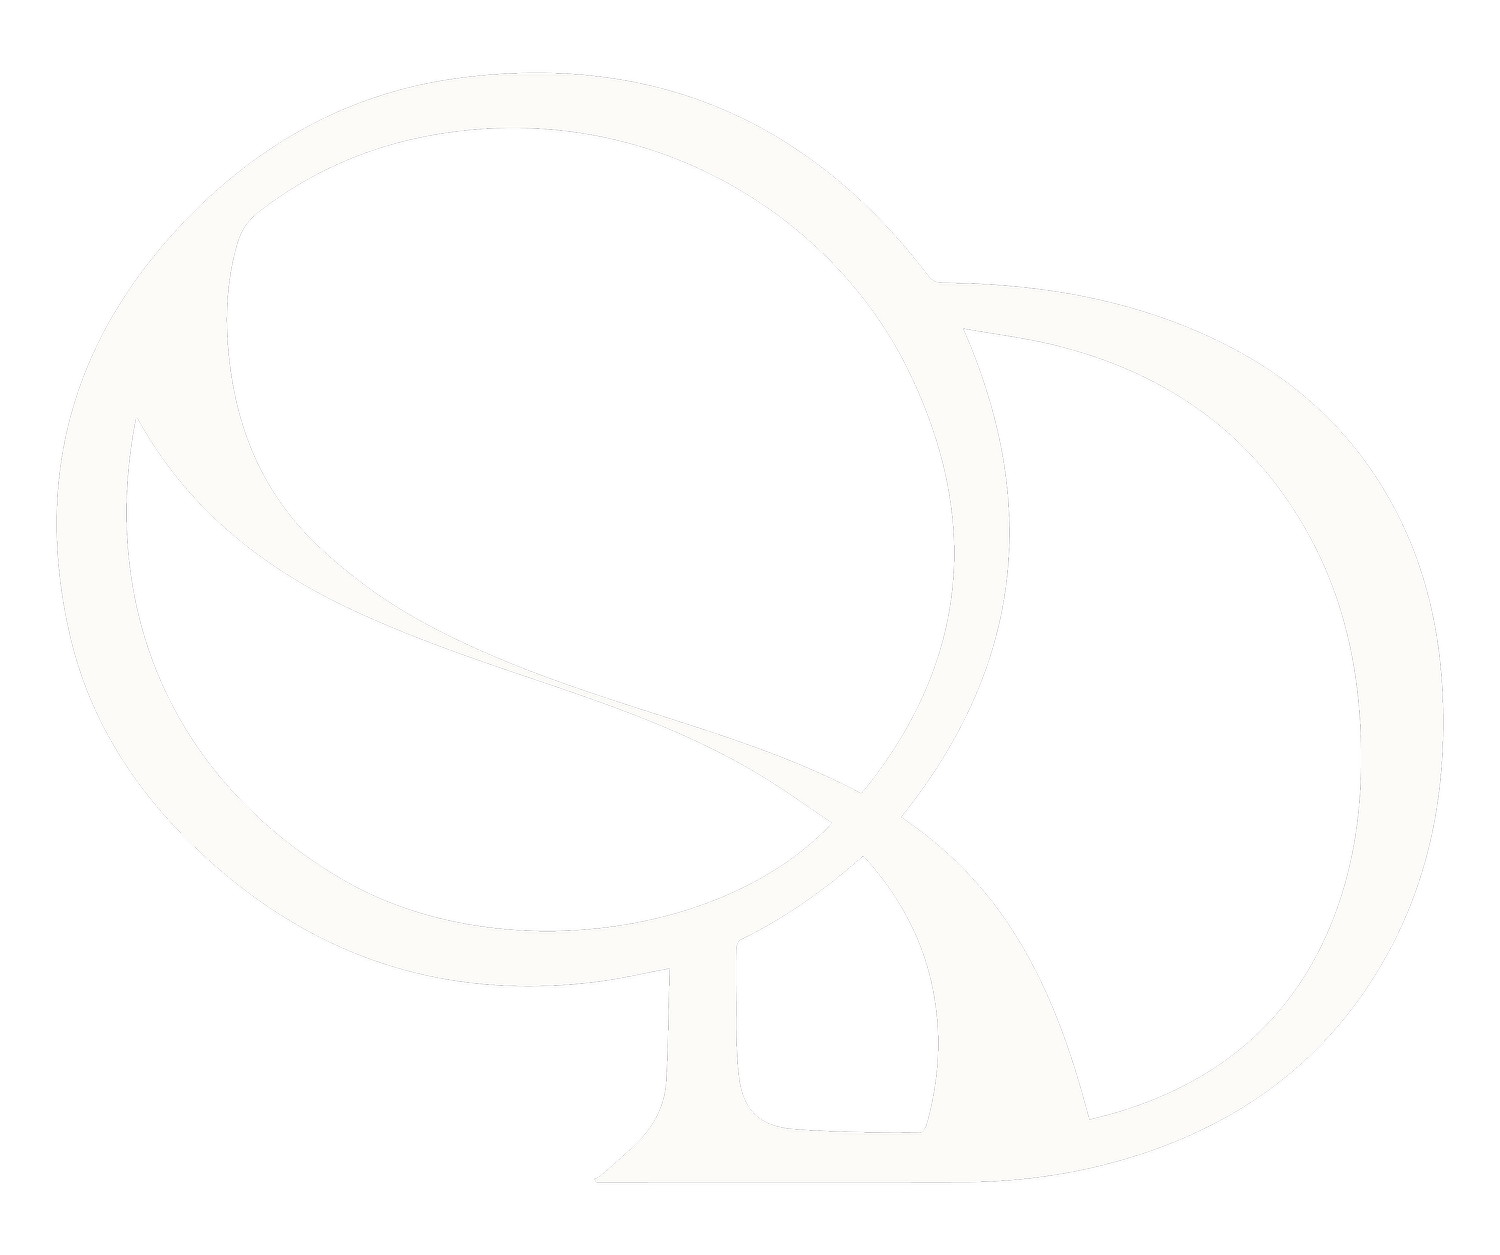 Quiddity Design Co